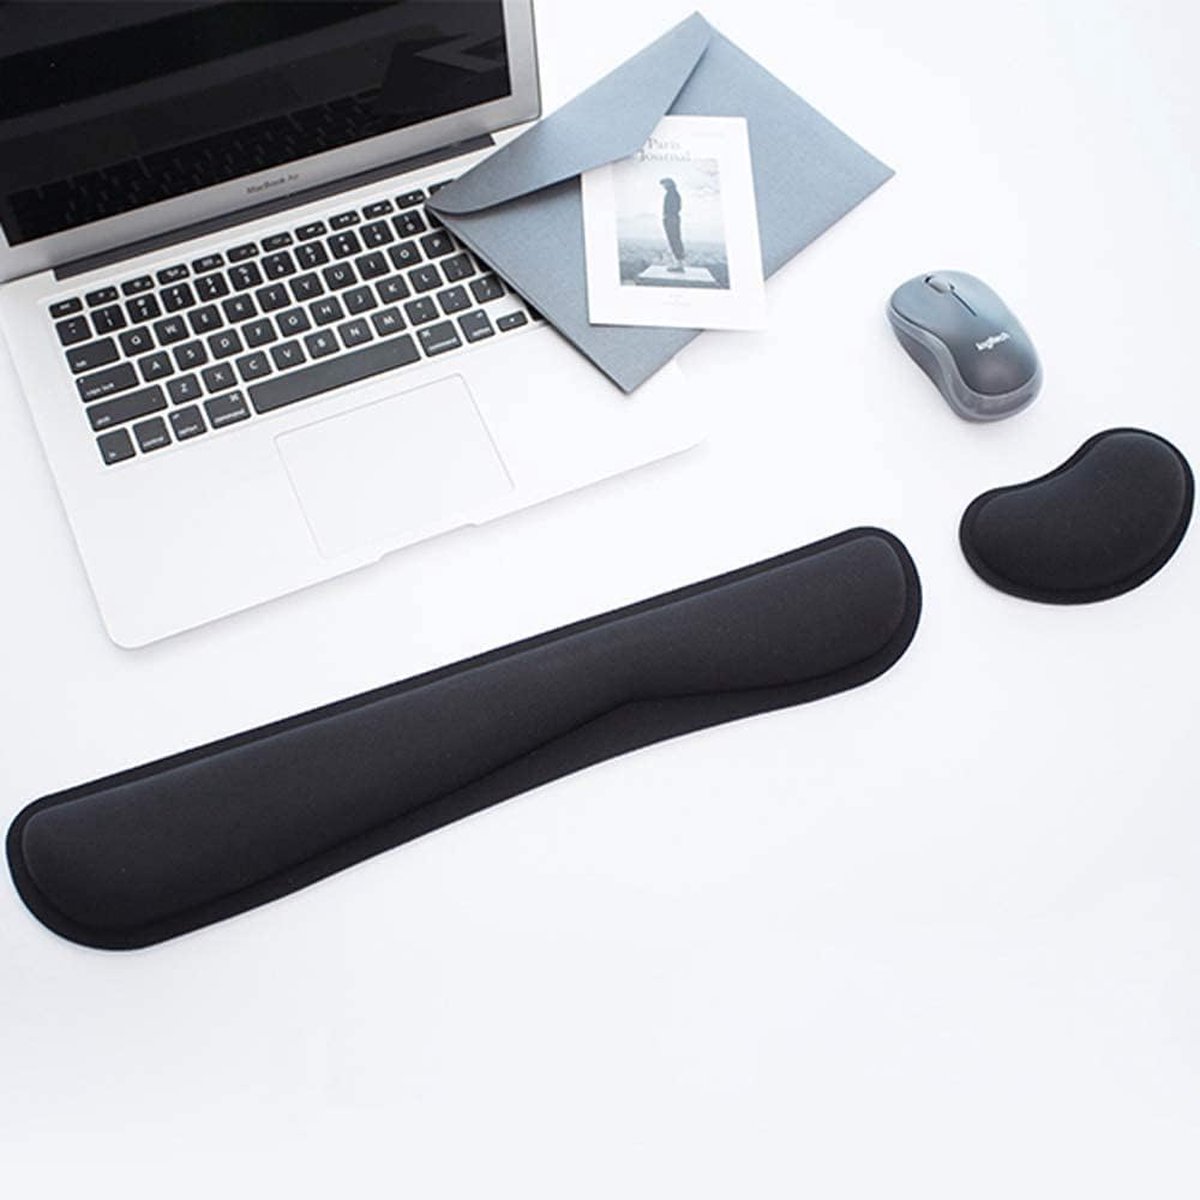 Tapis de souris ergonomique haut de gamme avec support gel au poignet, noir